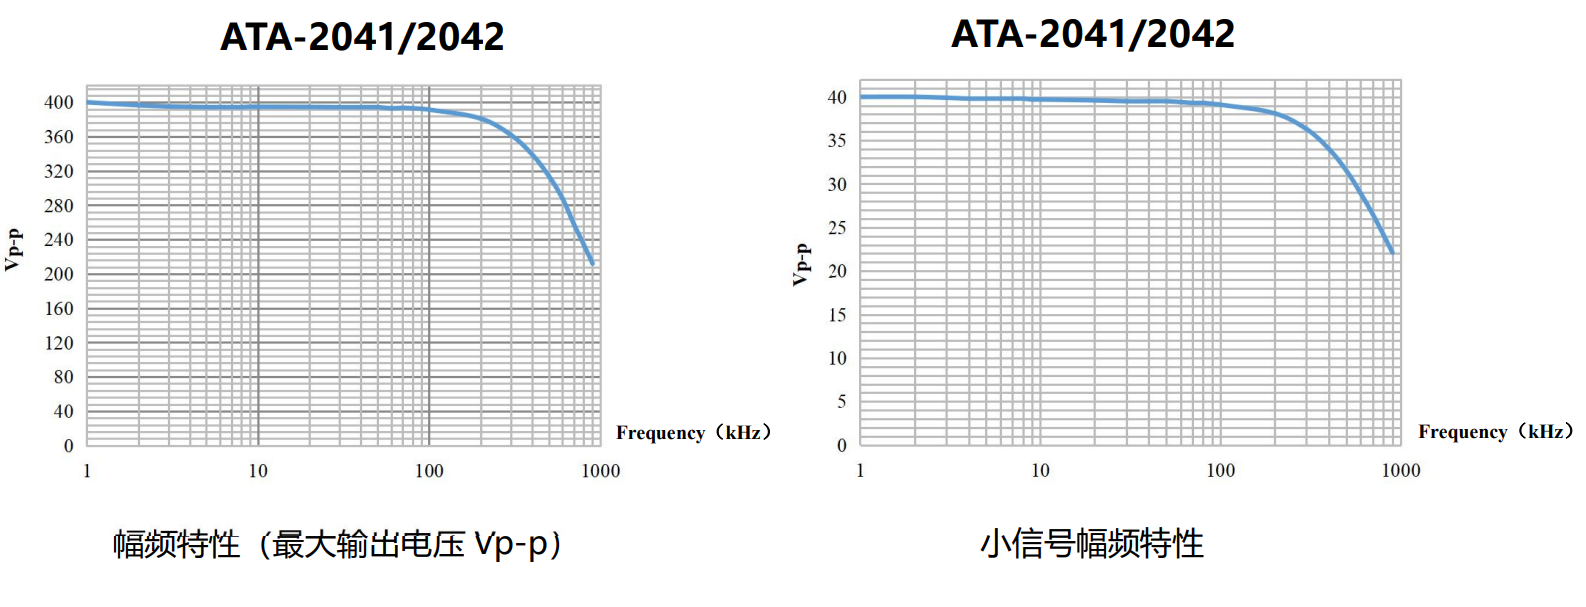 ATA-2041高压放大器技术指标